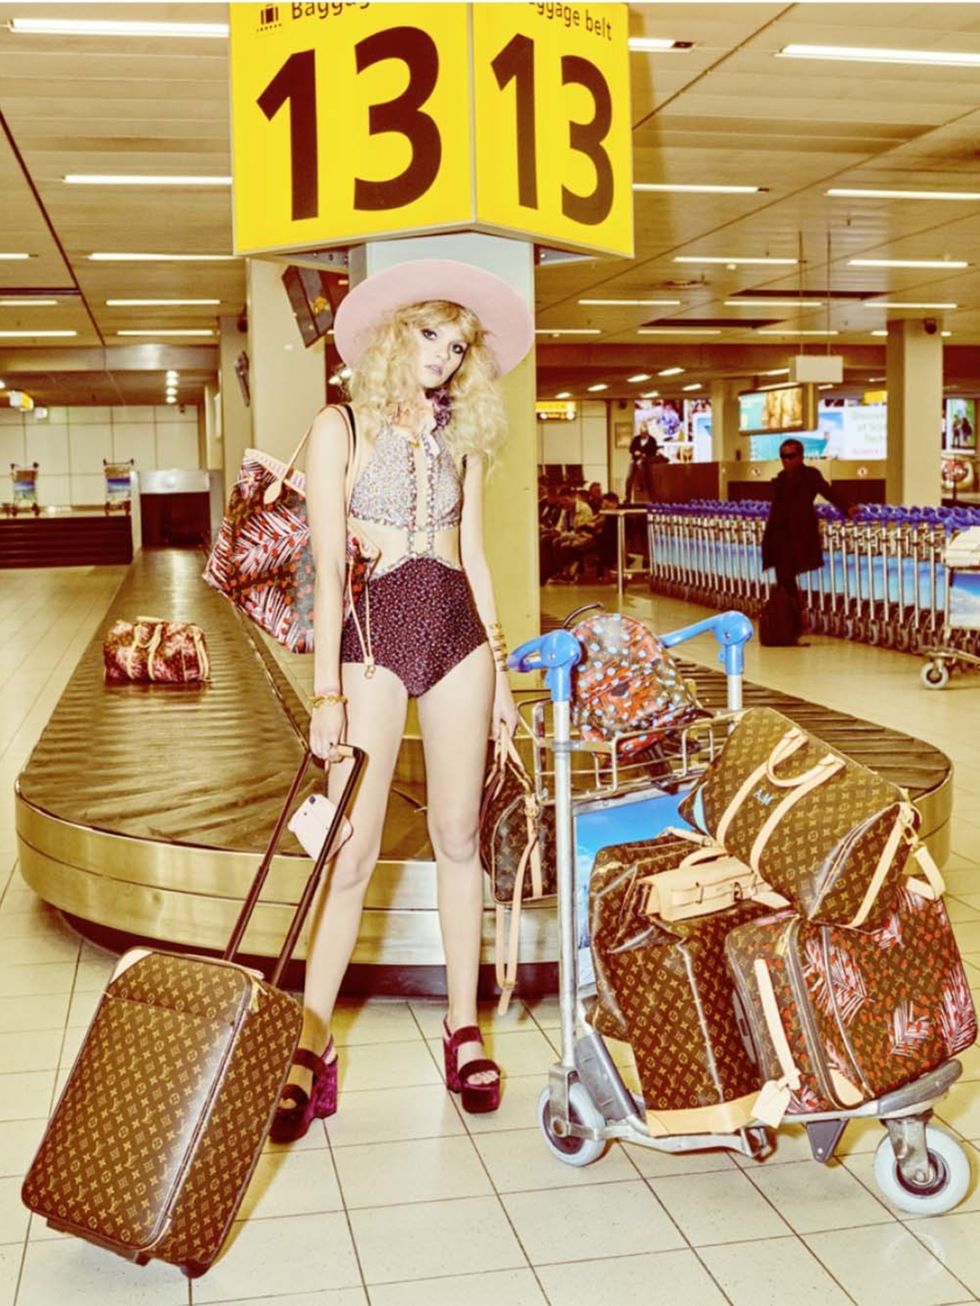 Human leg, Advertising, Basket, Cart, Baggage, Shopping cart, Retail, Wicker, Customer, 